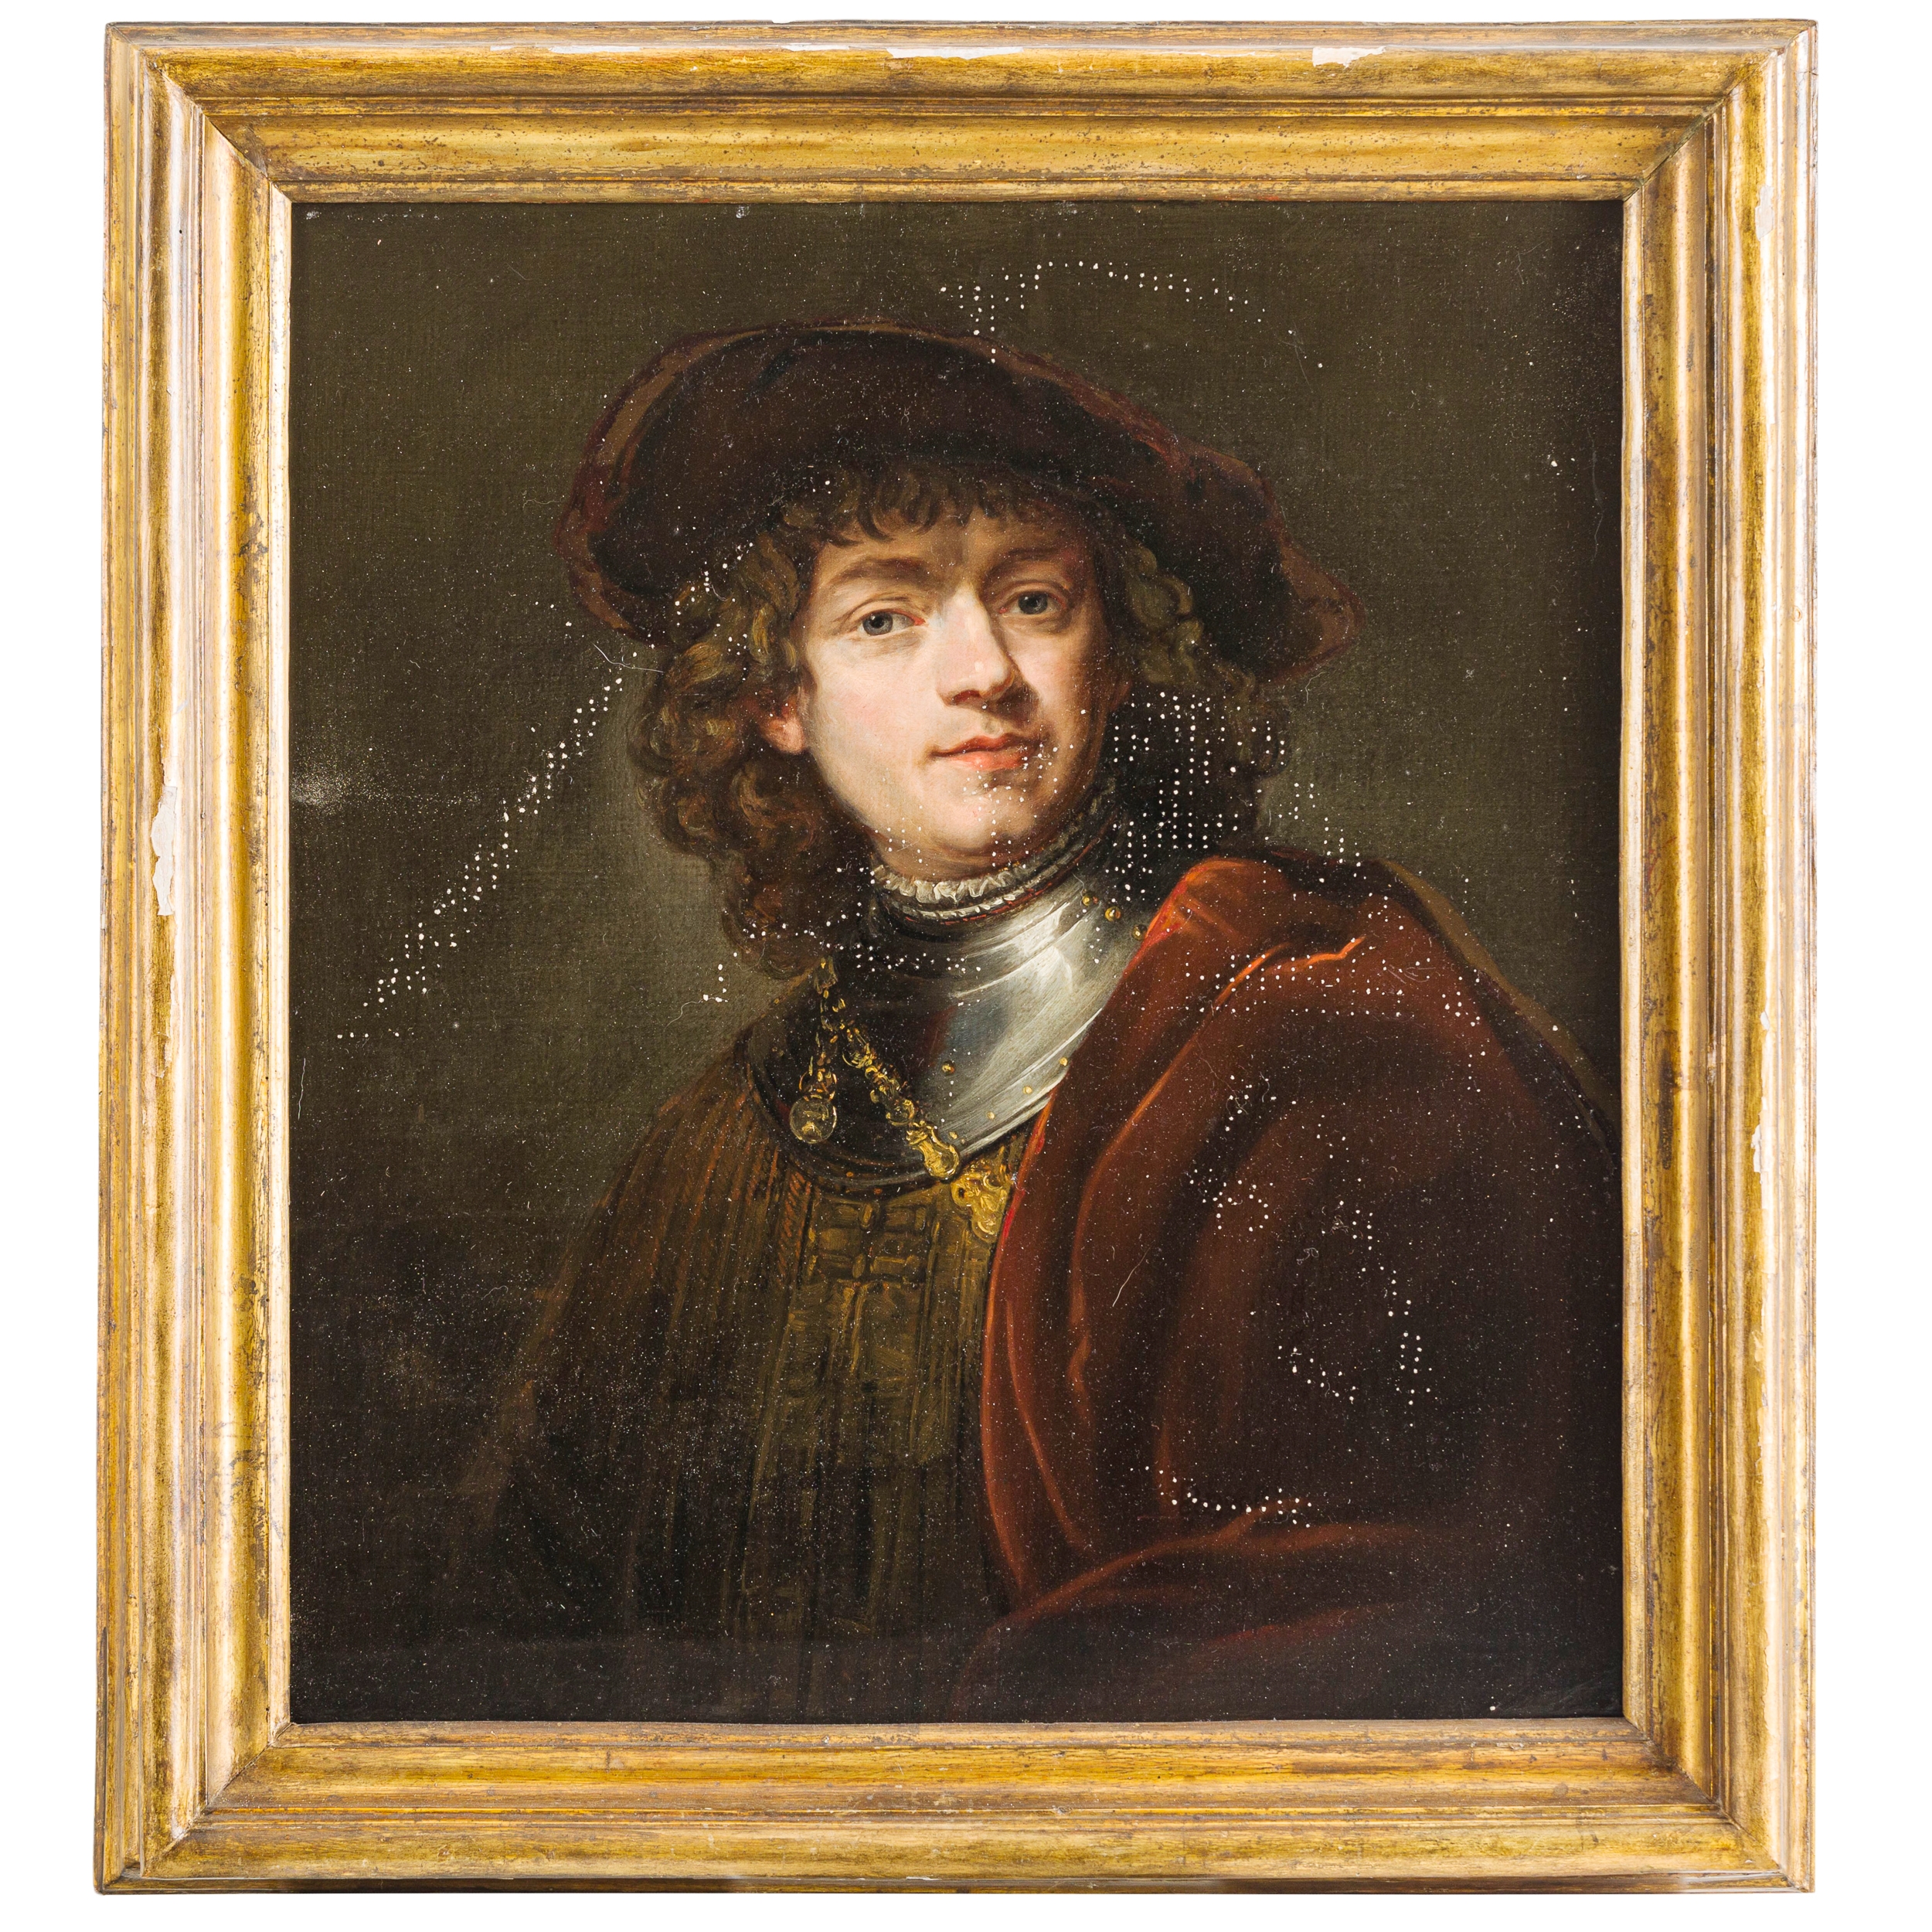 Autoritratto by Rembrandt van Rijn